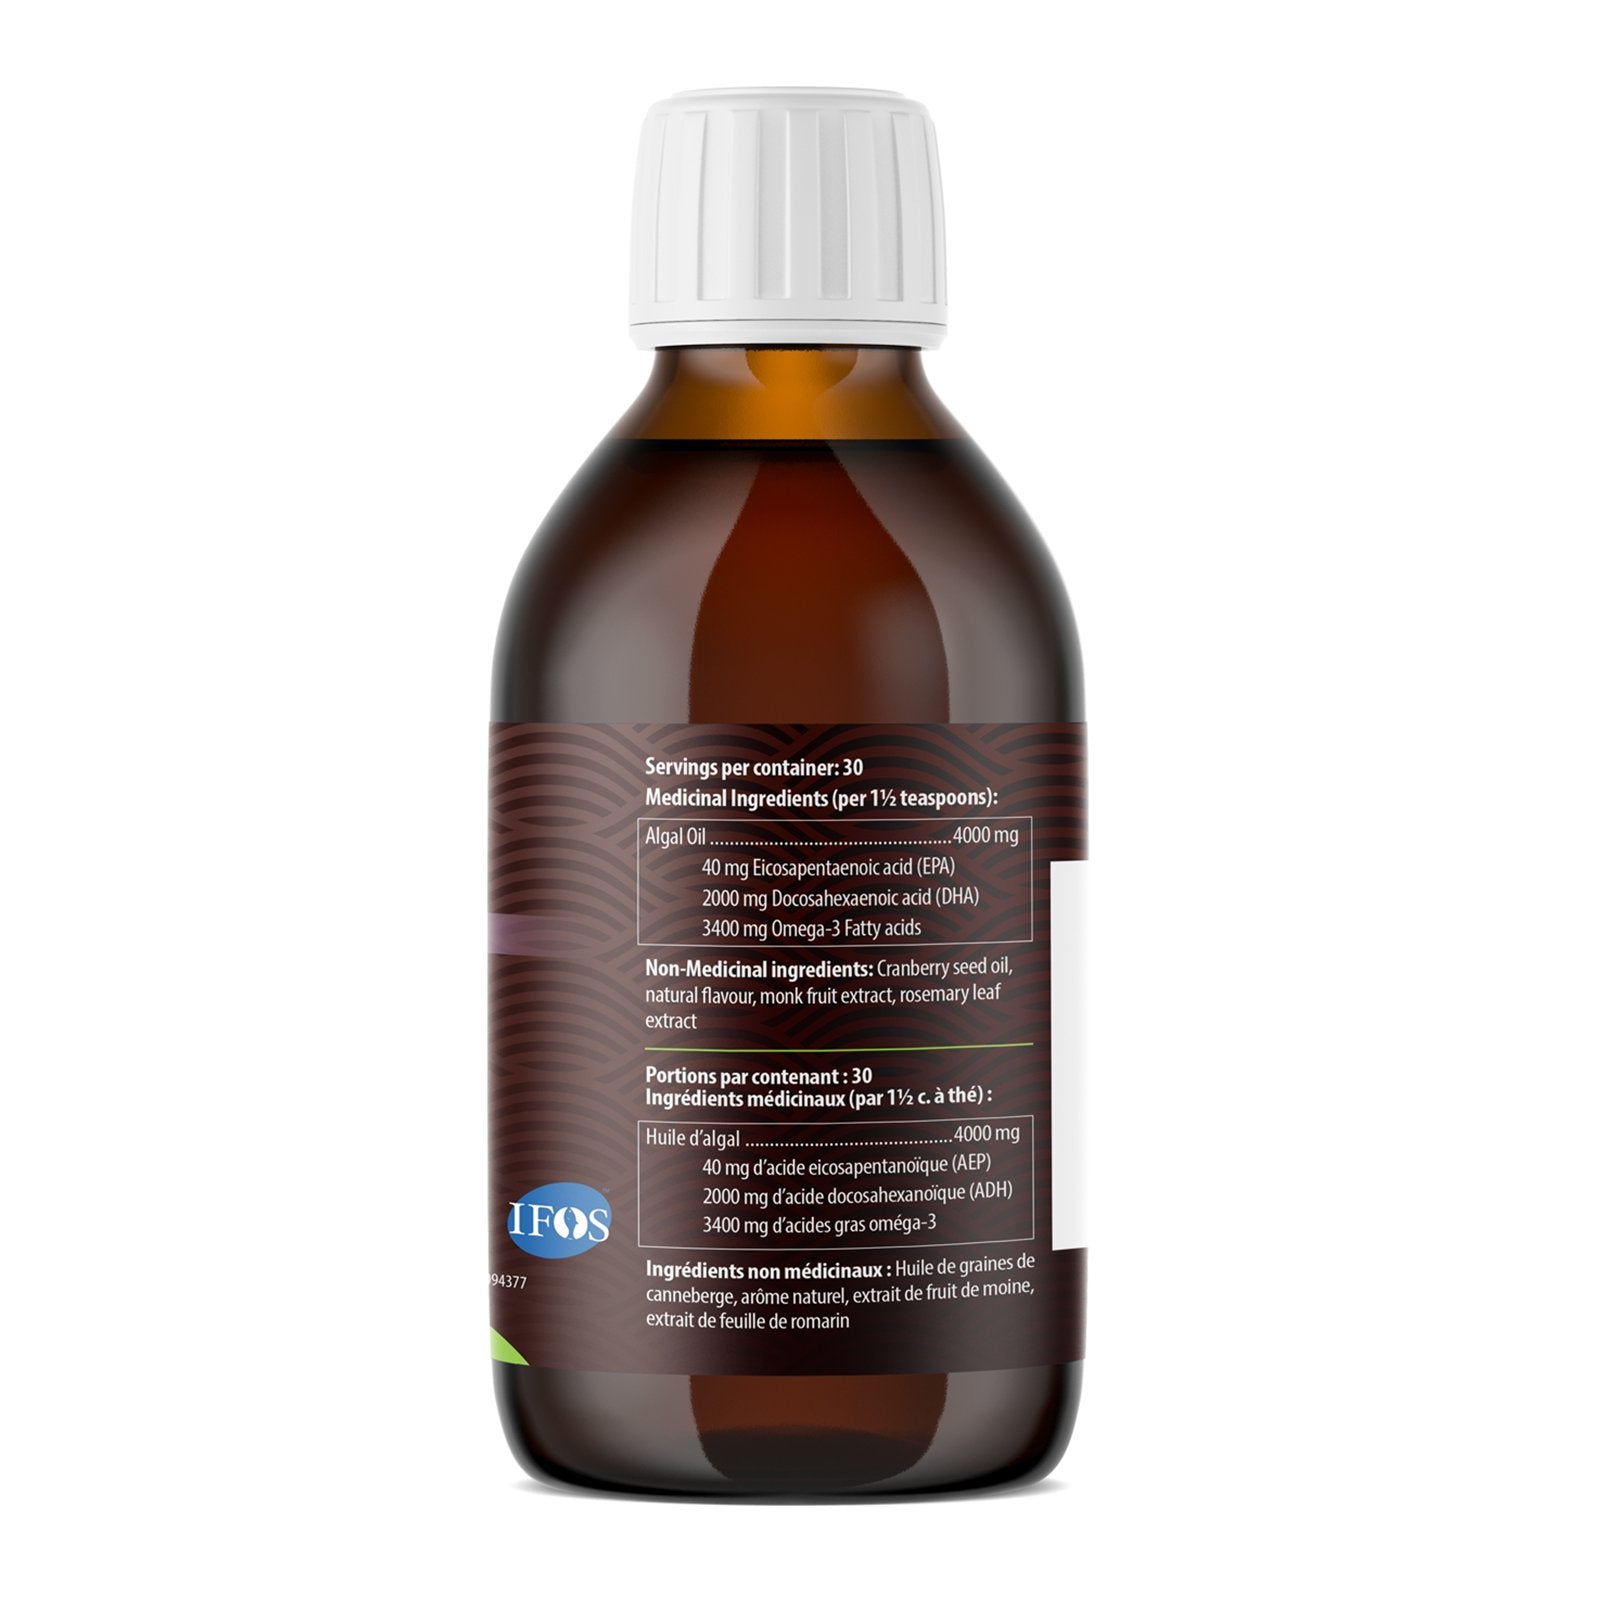 AquaOmega Omega-3 Algae Oil - Orange (225ml) - Lifestyle Markets